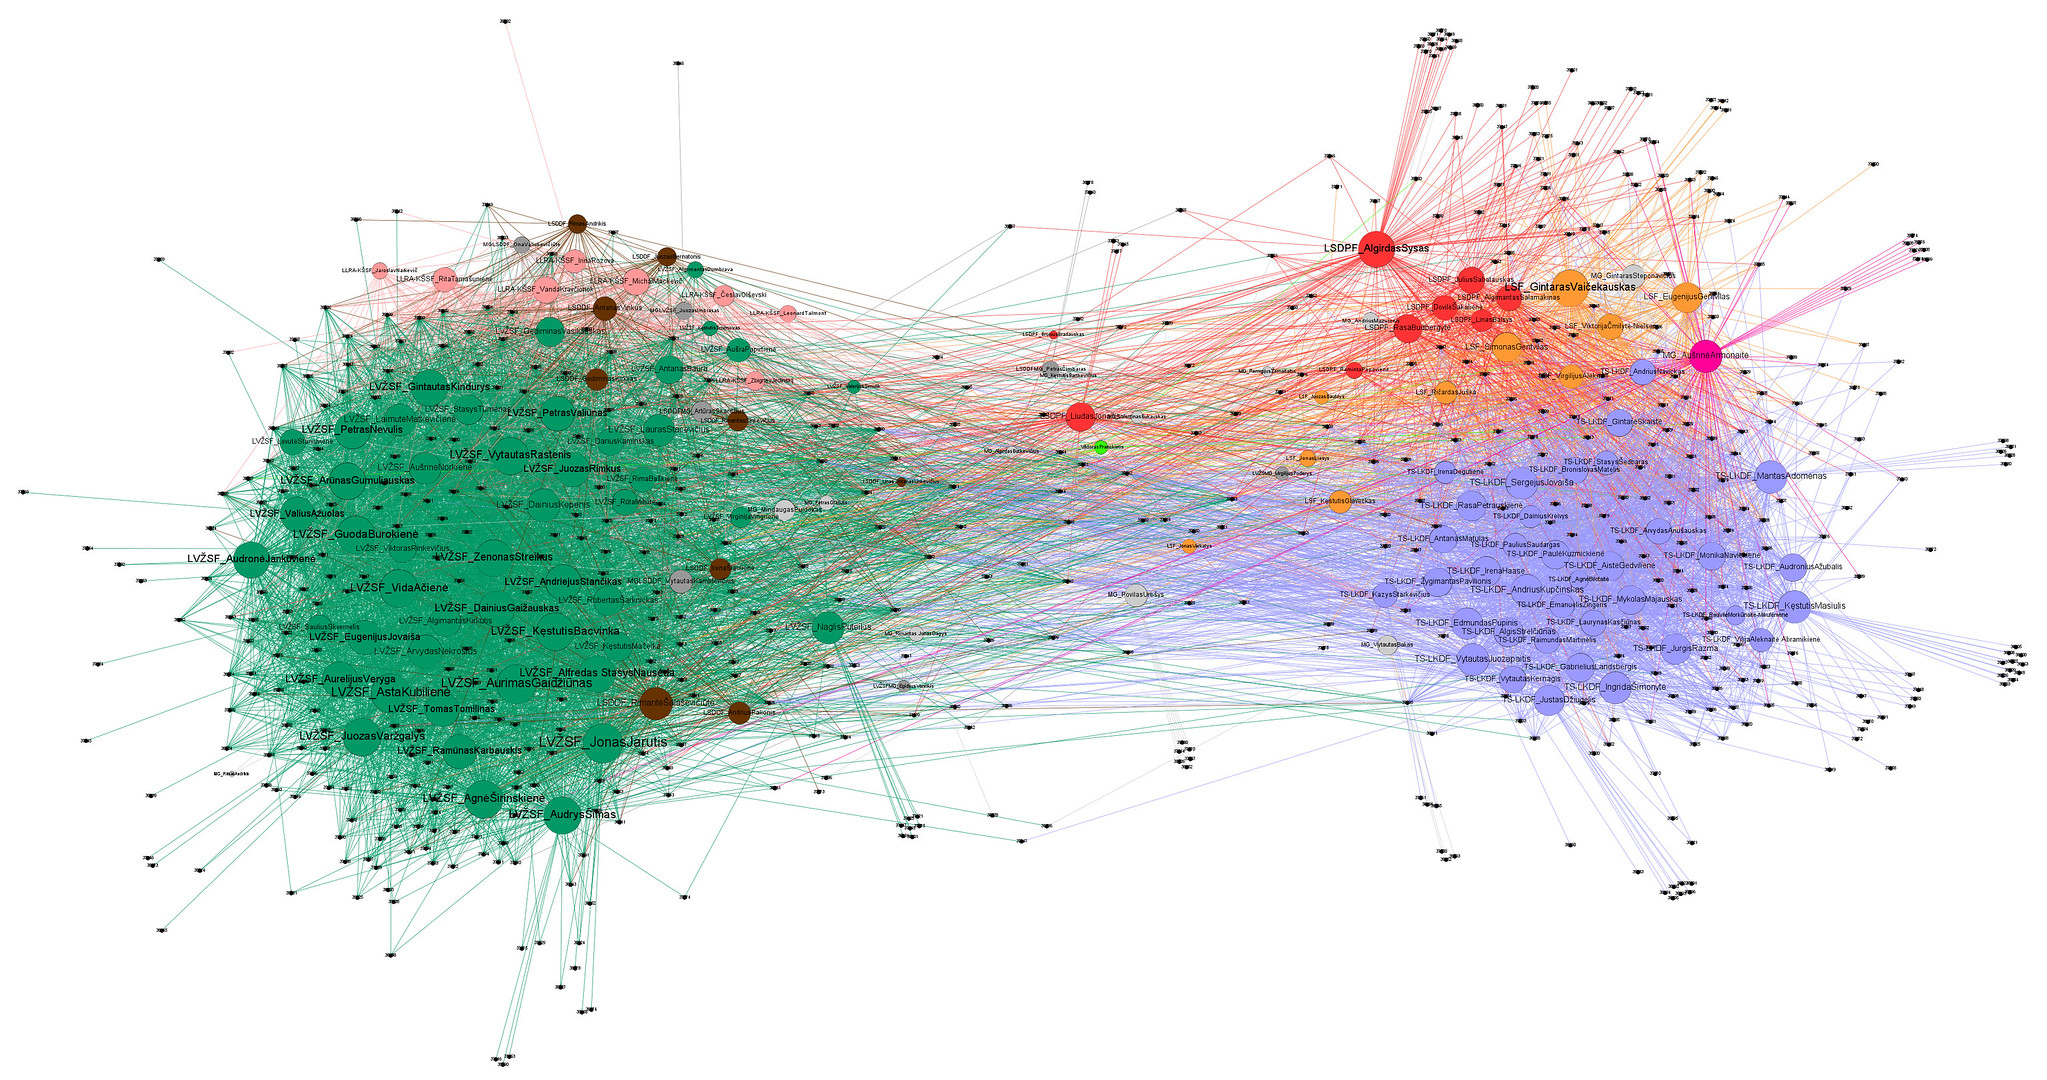 Network diagrams